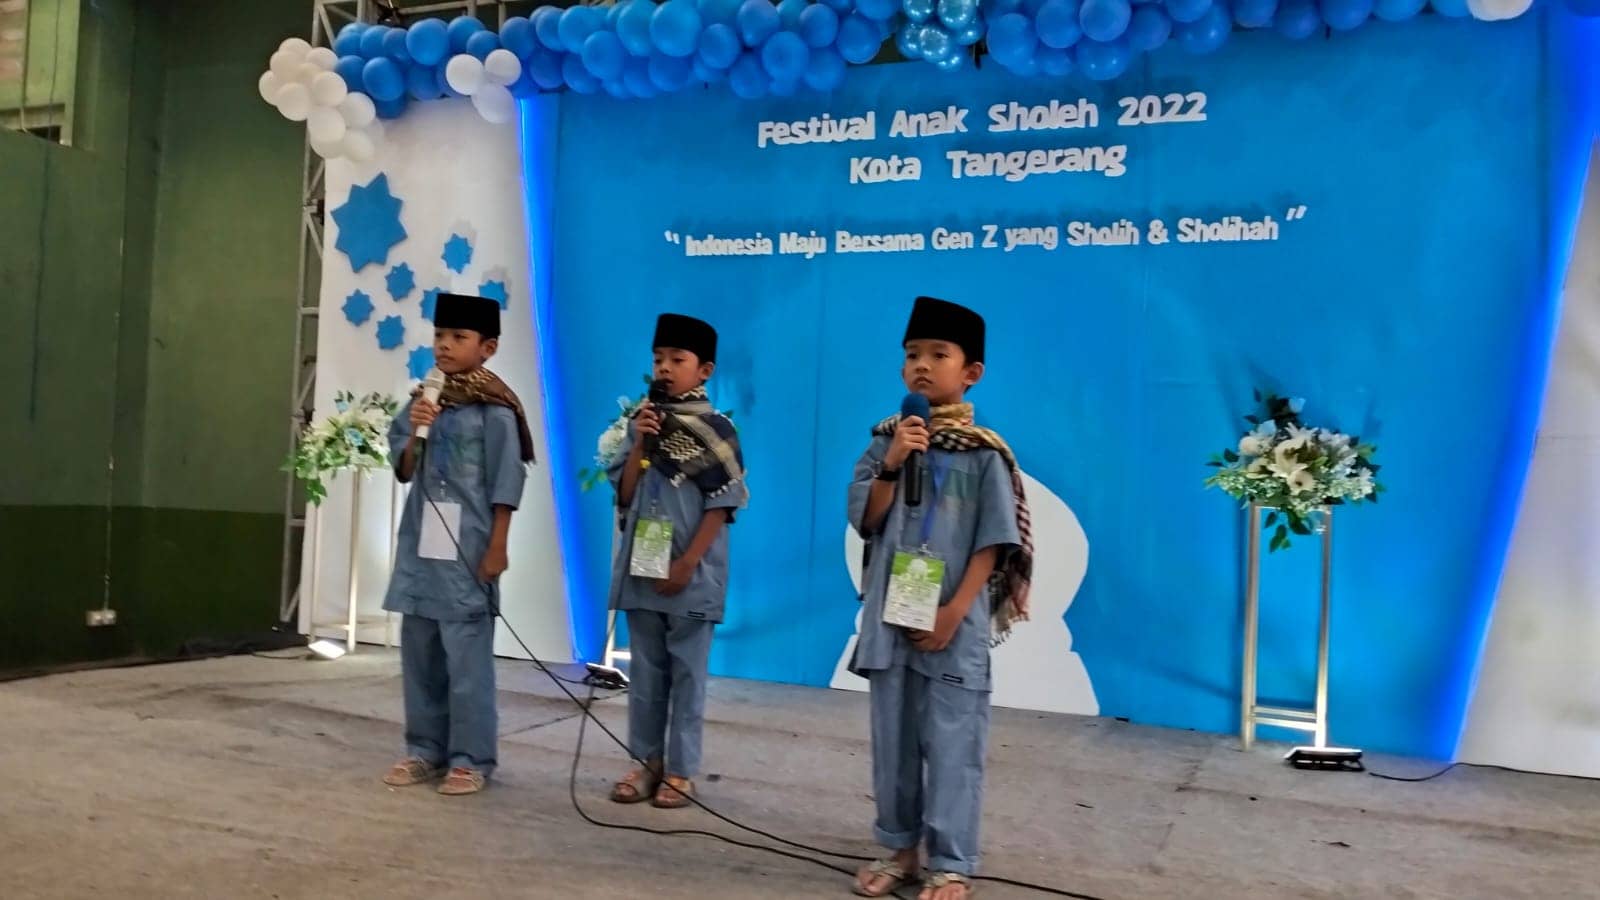 Ratusan Anak Meriahkan Festival Anak Sholeh 2022 yang Digelar LDII Kota Tangerang